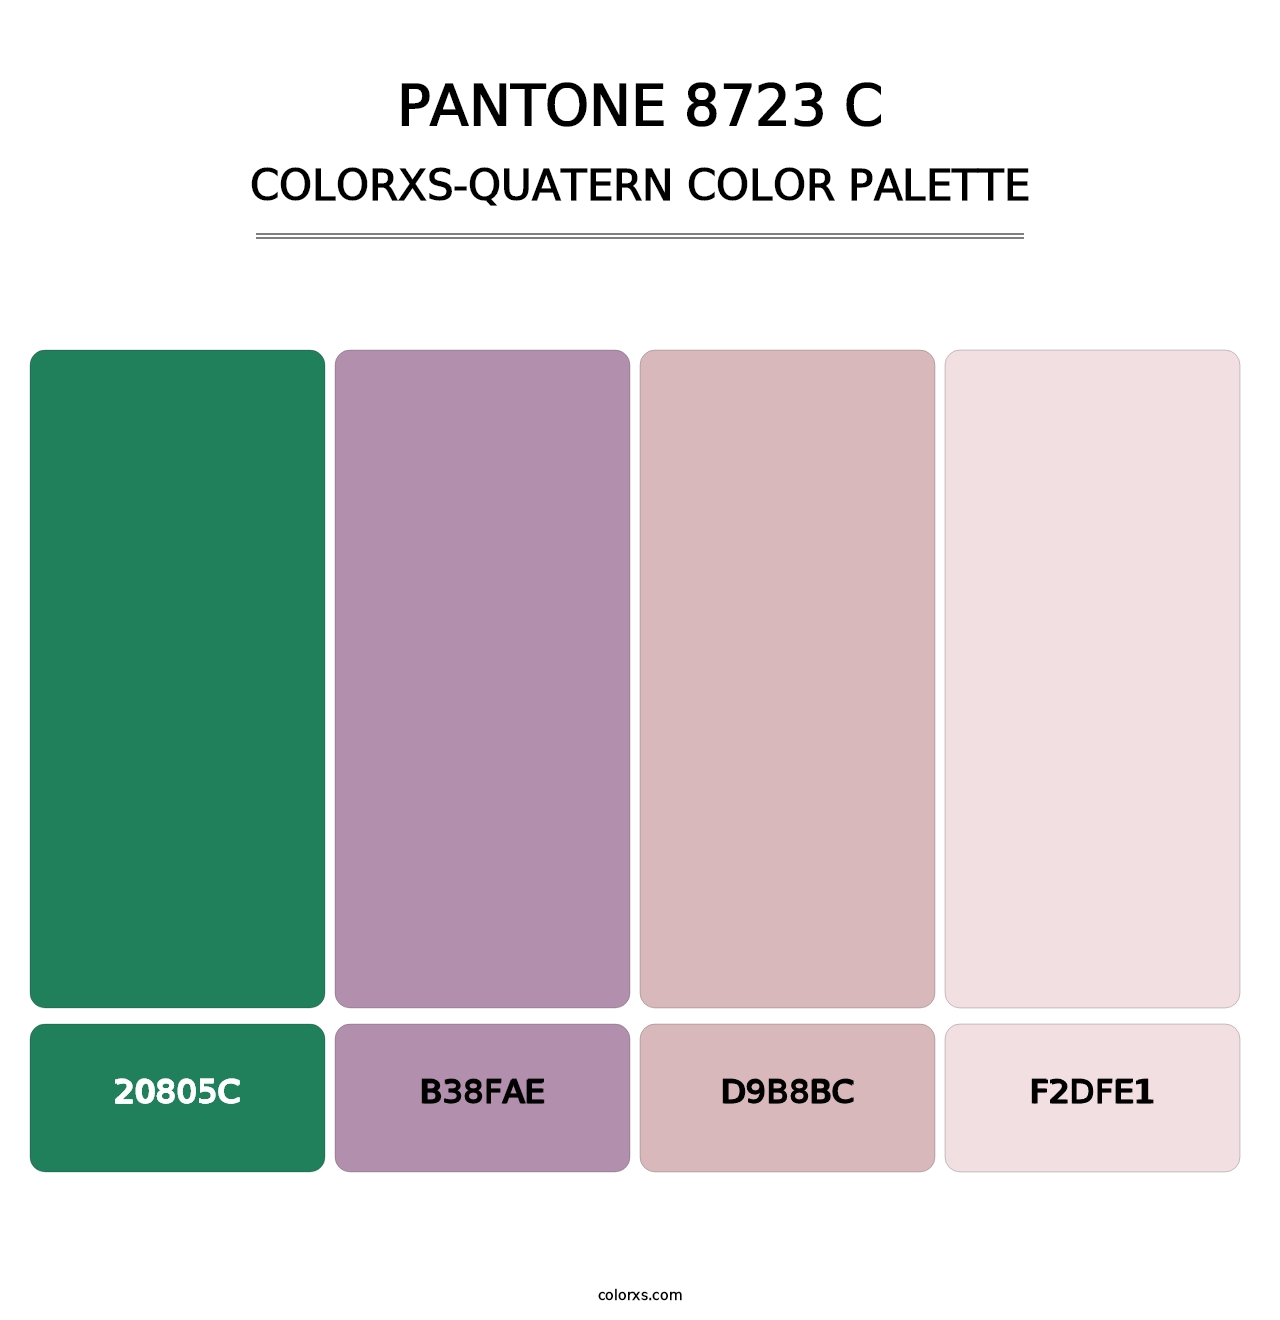 PANTONE 8723 C - Colorxs Quatern Palette